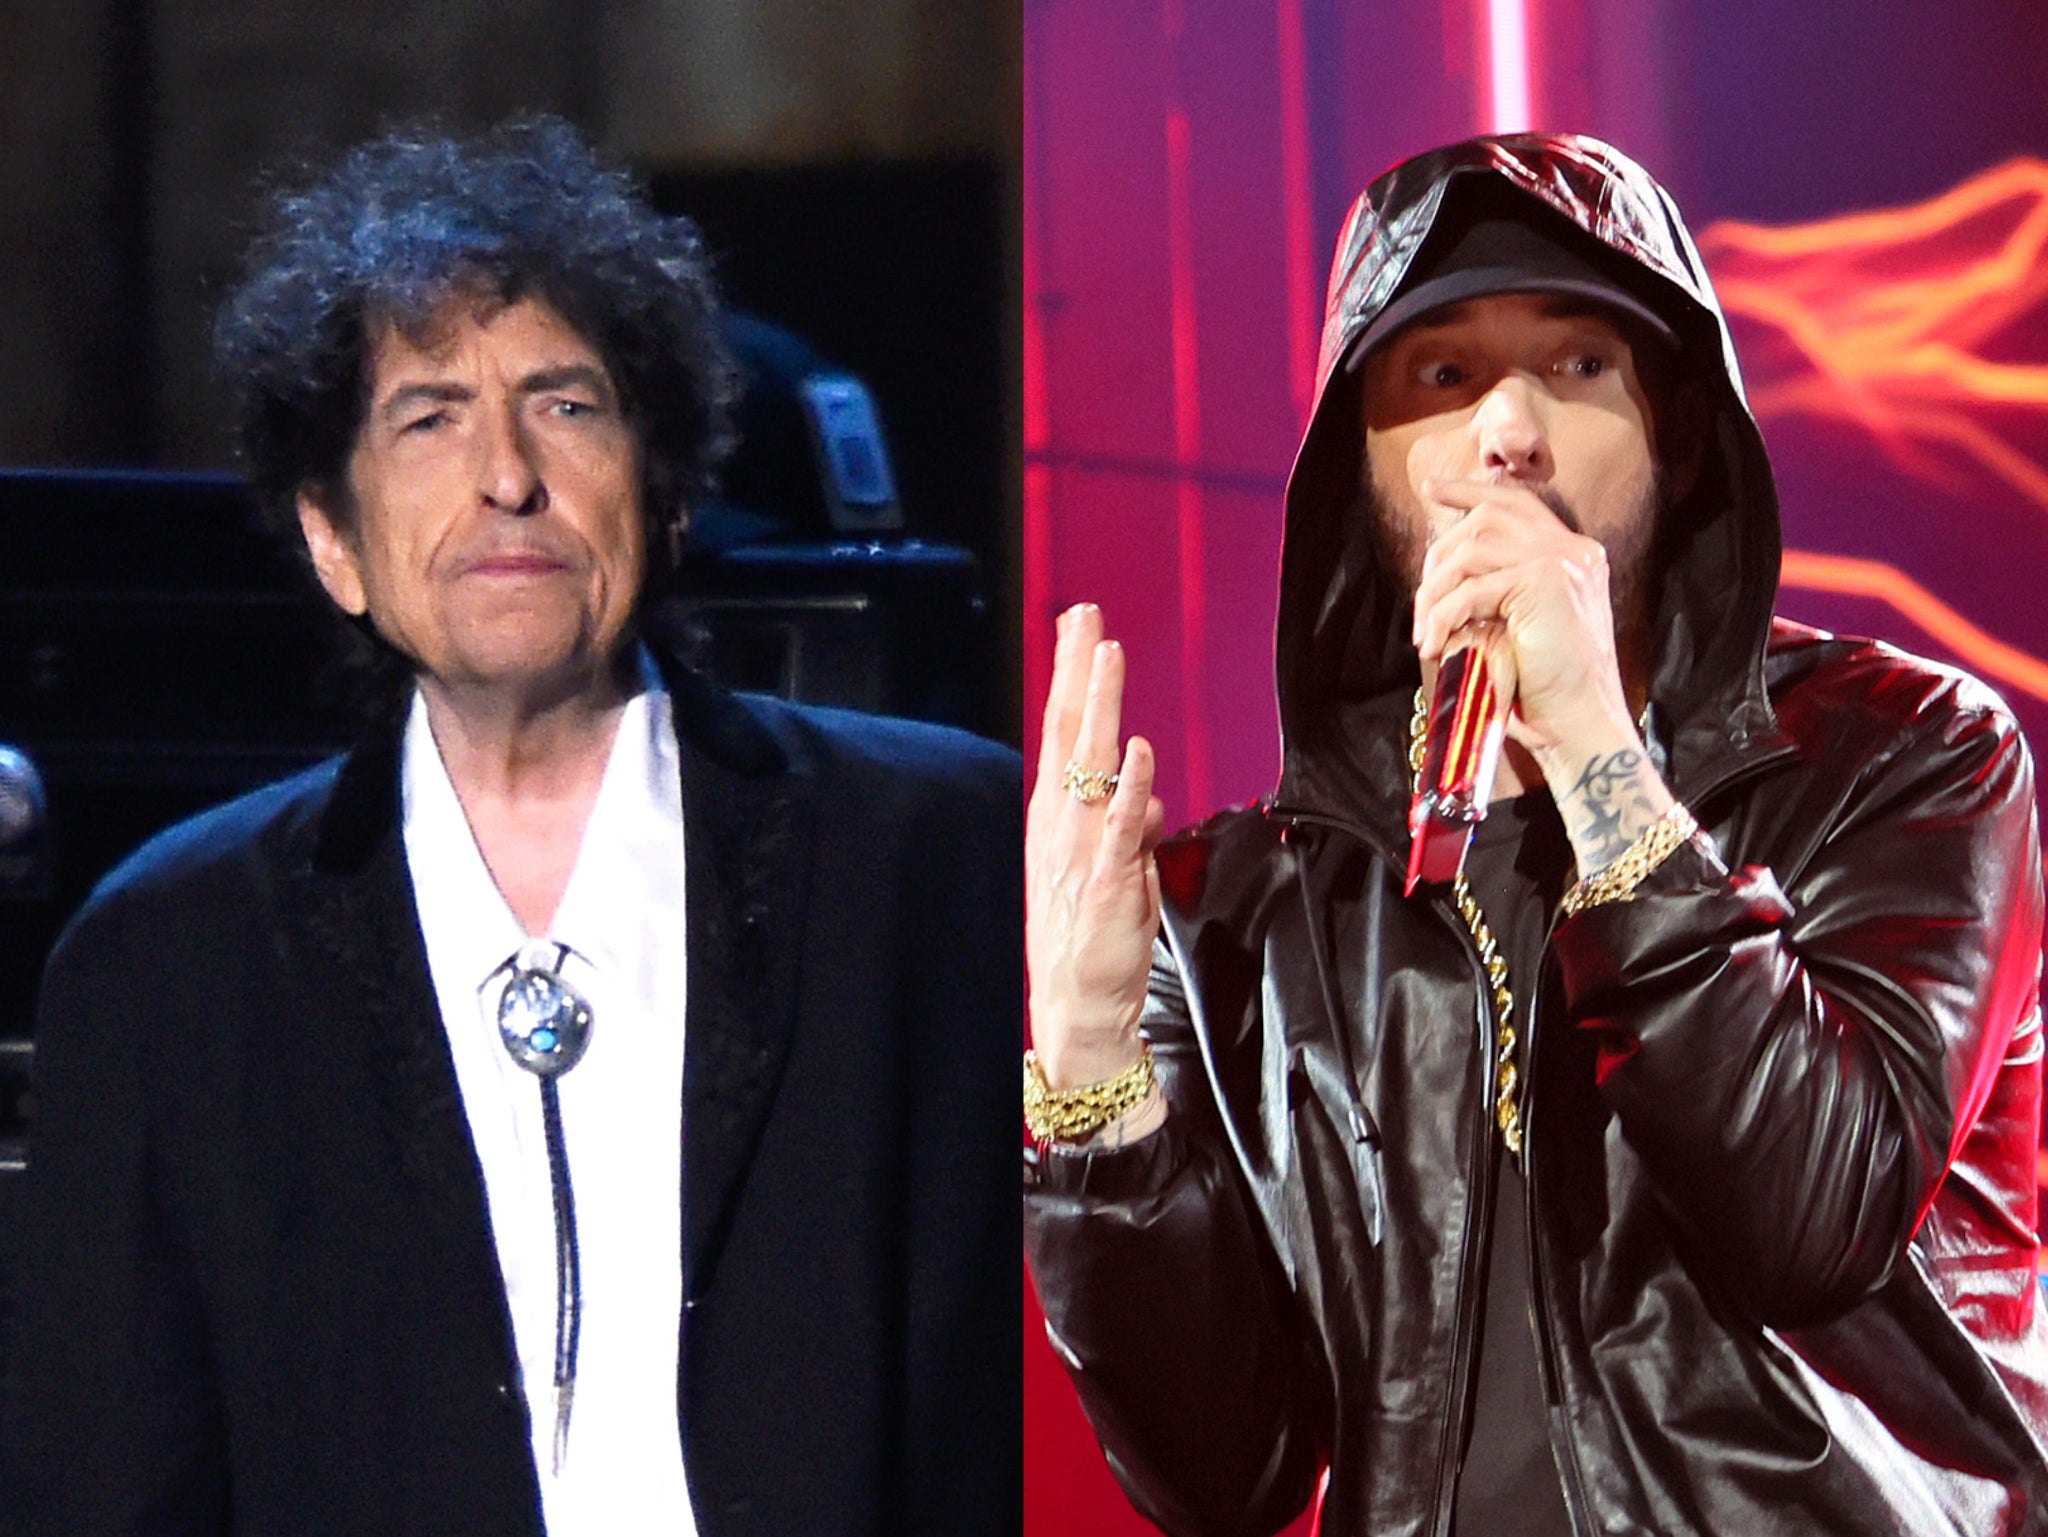 Bob Dylan and Eminem